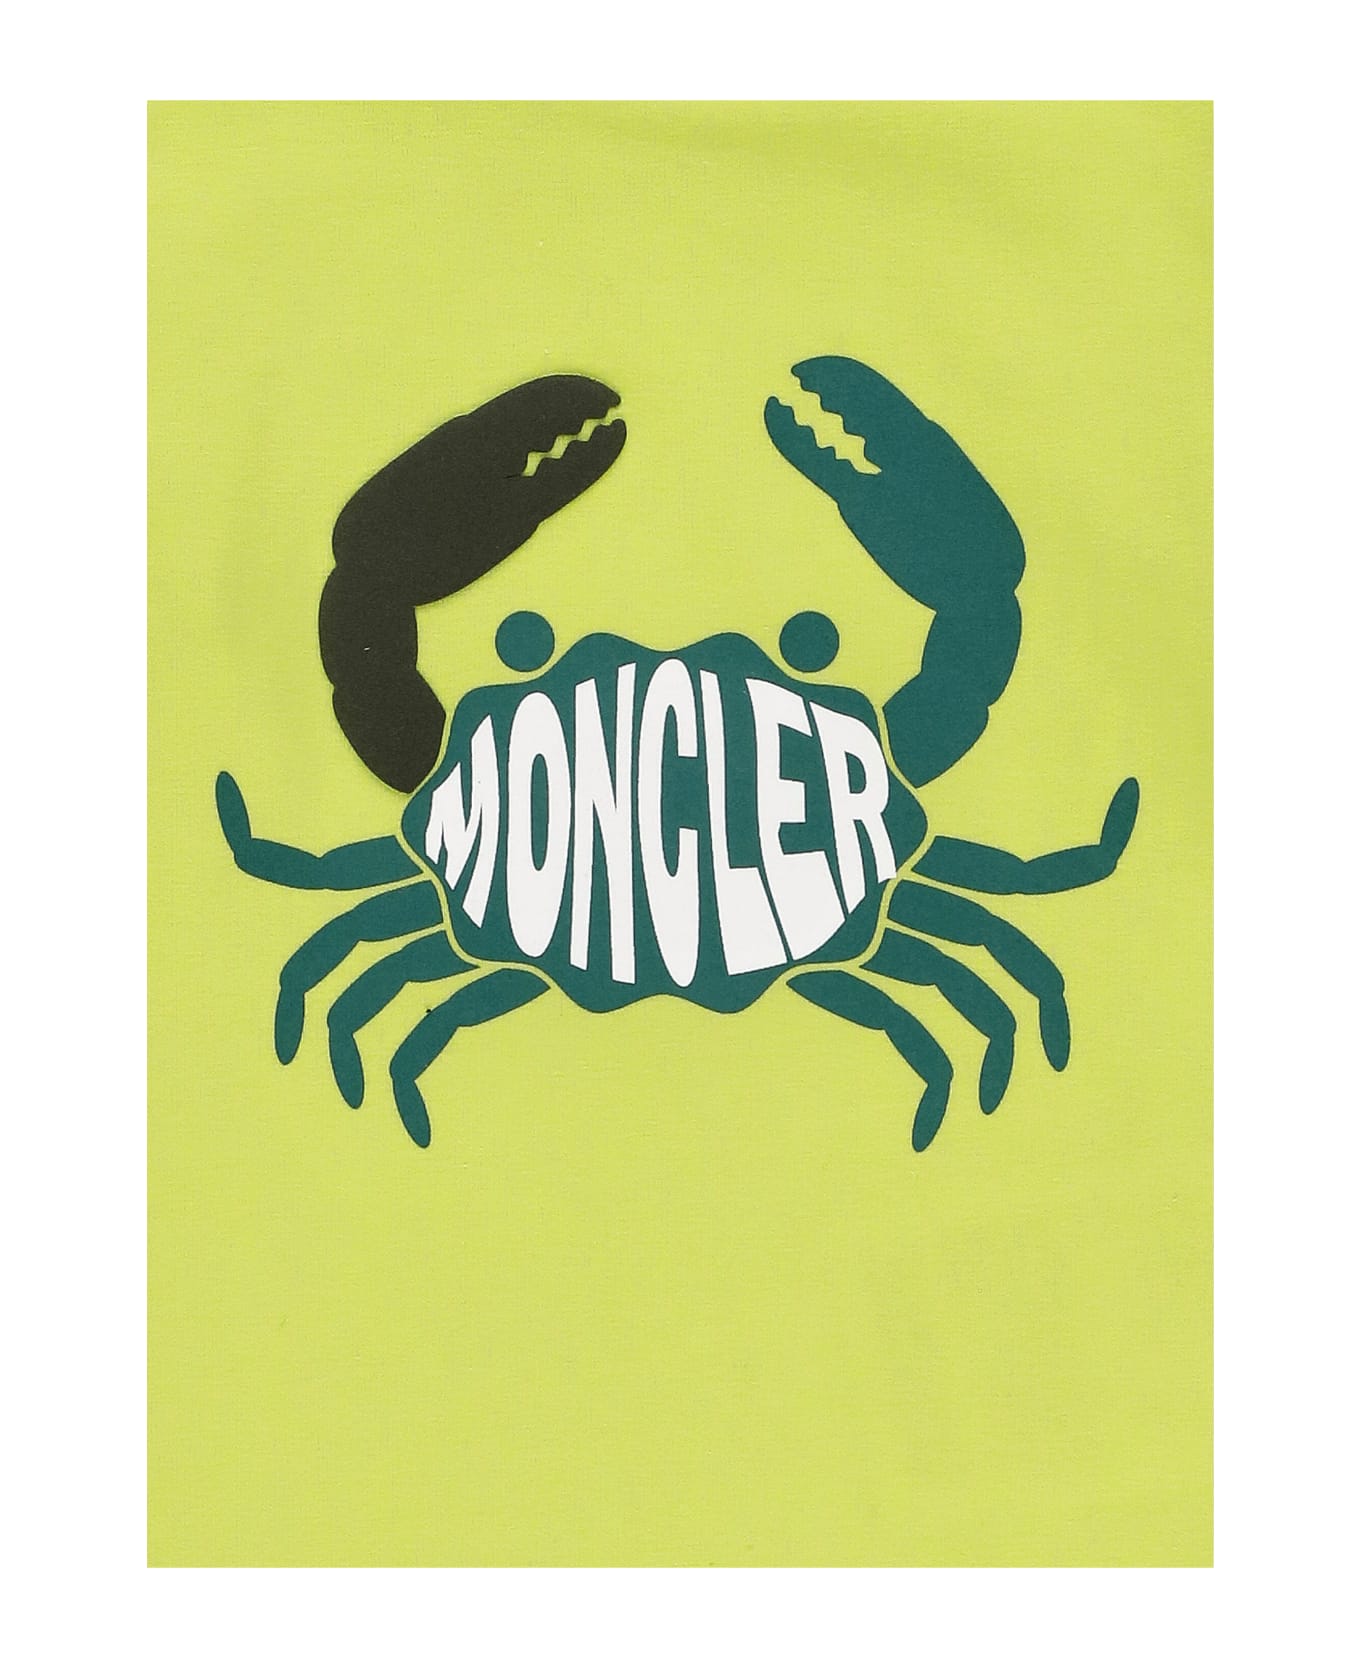 Moncler Cotton T-shirt - Green